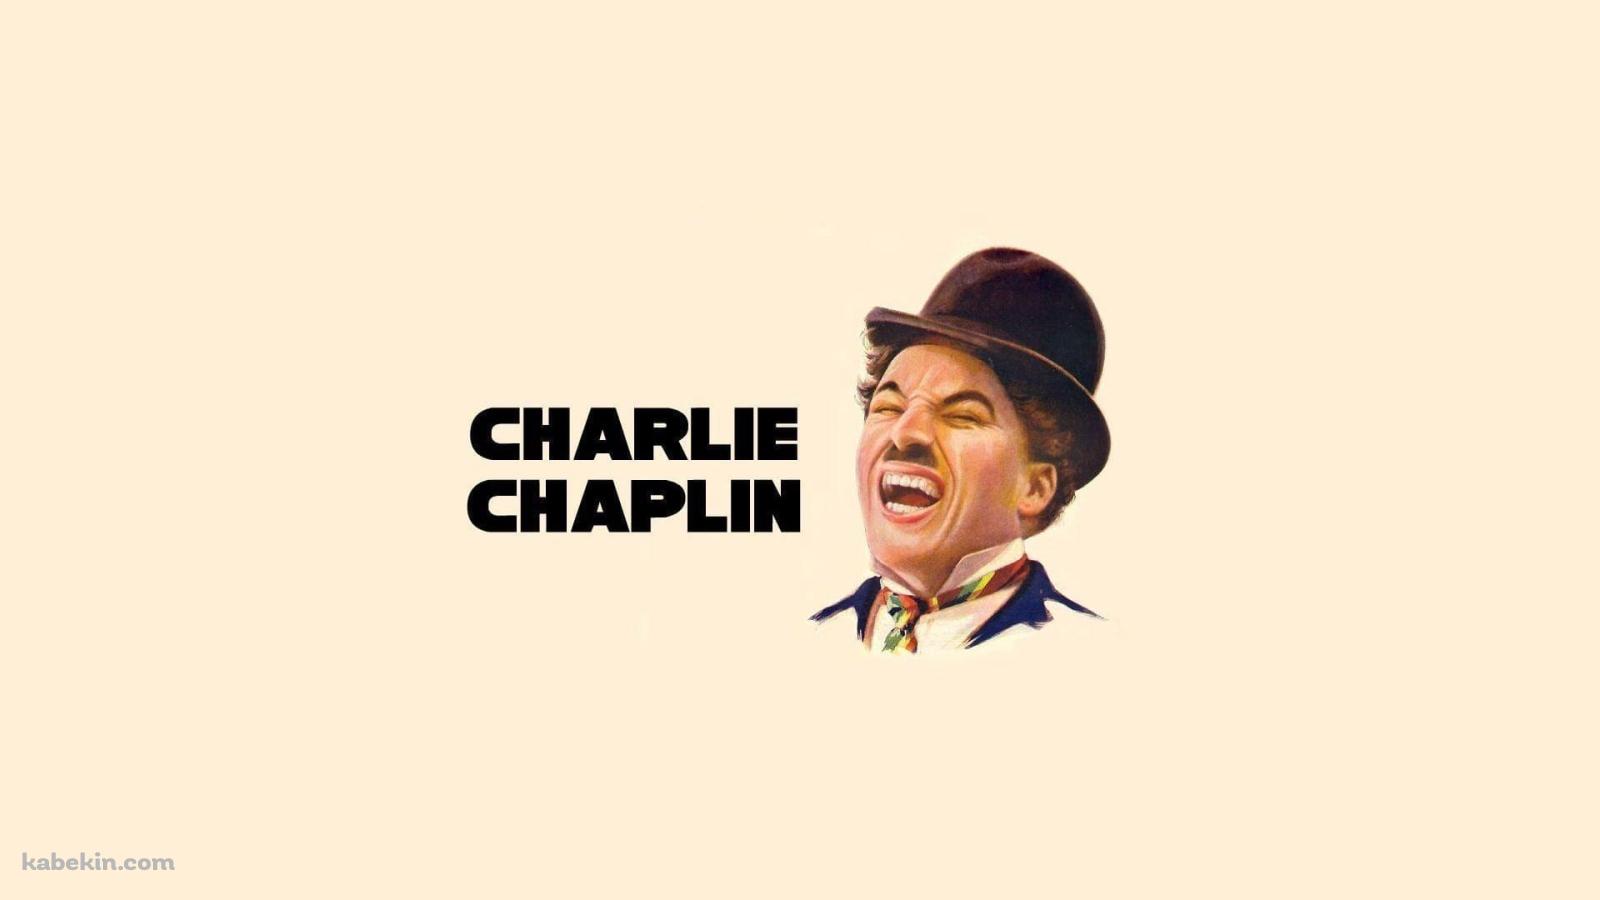 チャールズ・チャップリン / コメディアン / 喜劇王の壁紙(1600px x 900px) 高画質 PC・デスクトップ用